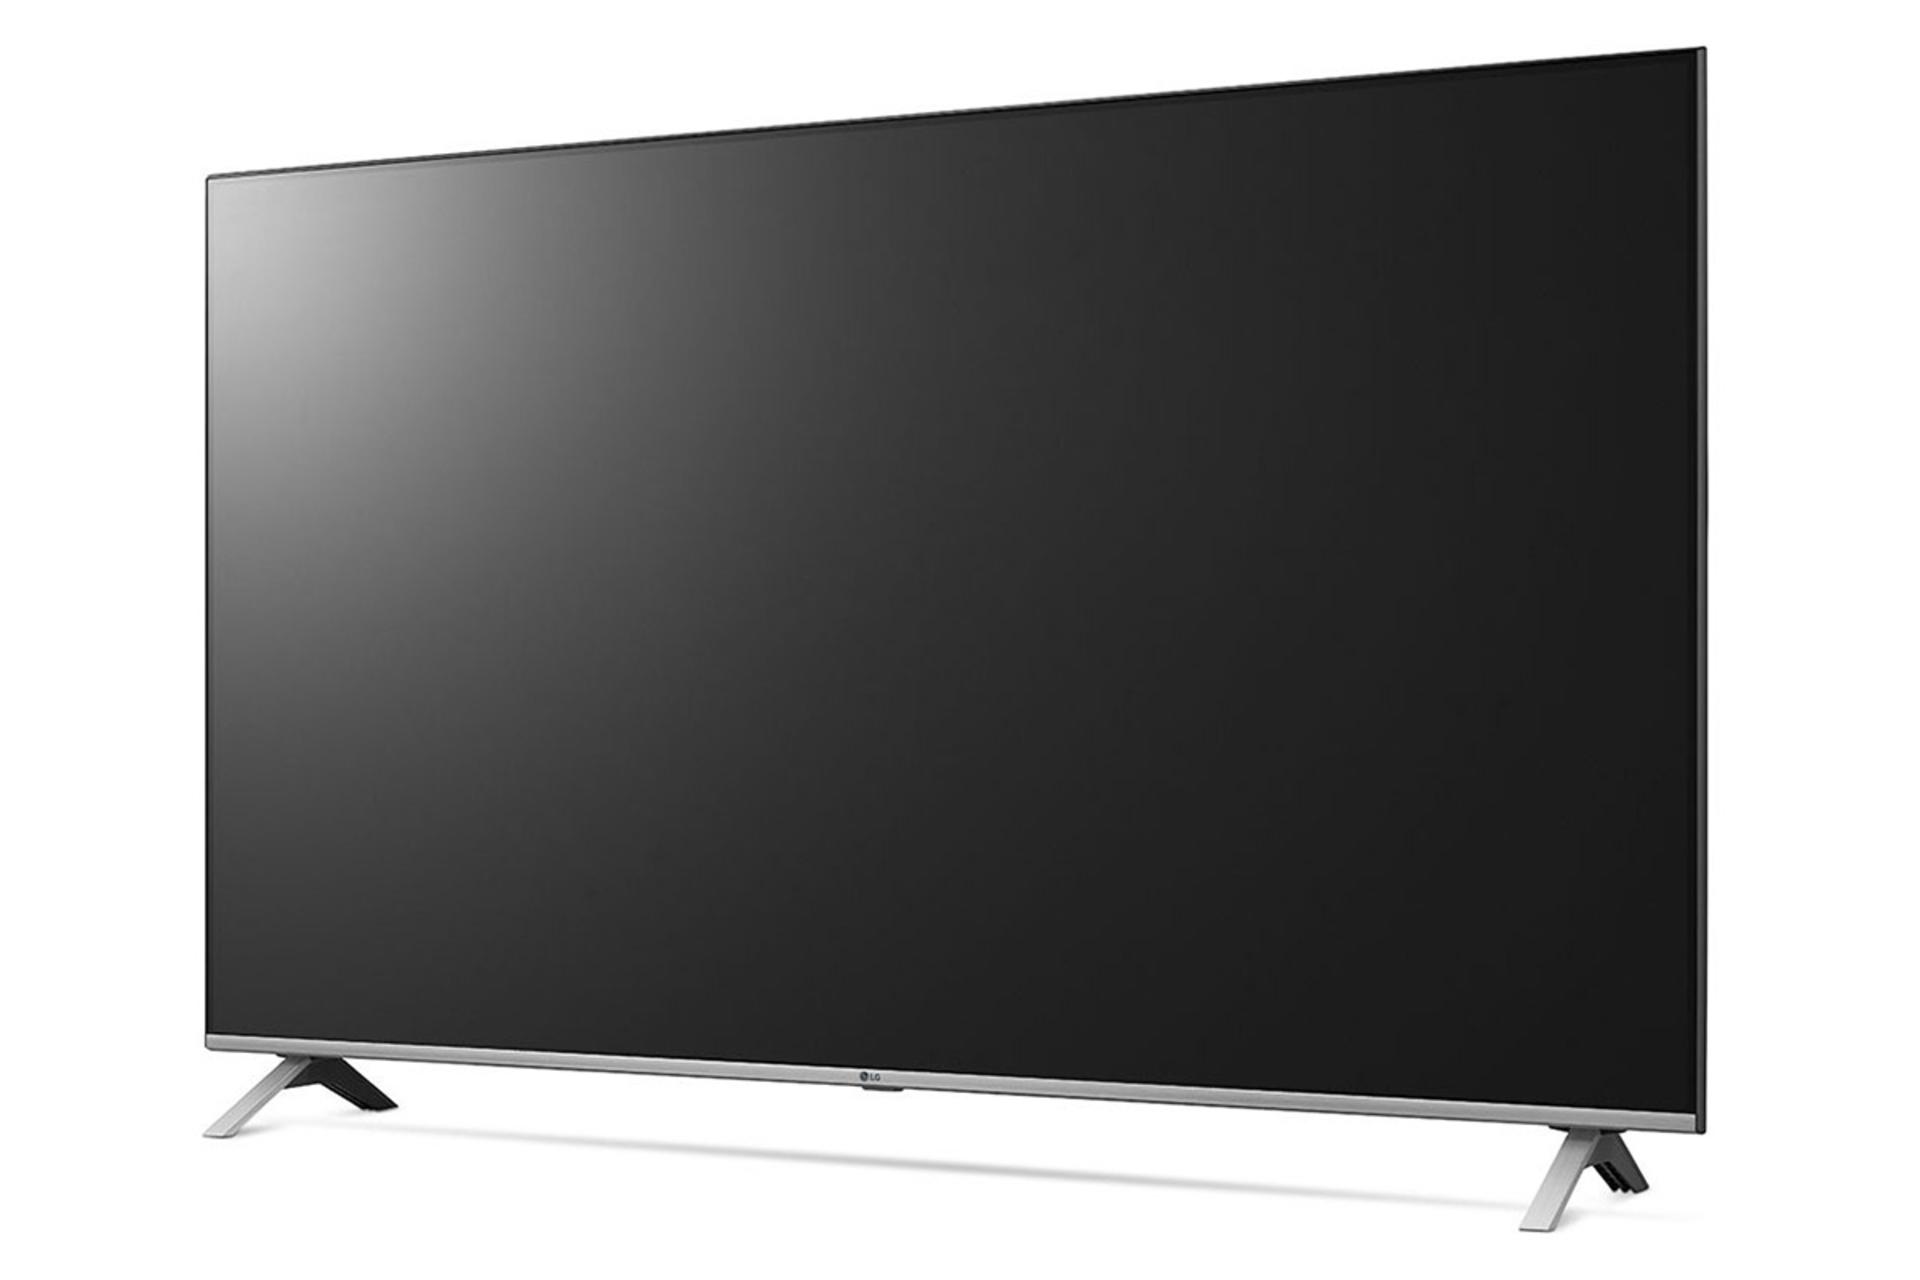 نمای نیمرخ  تلویزیون ال جی UN8060 مدل 65 اینچ با صفحه خاموش